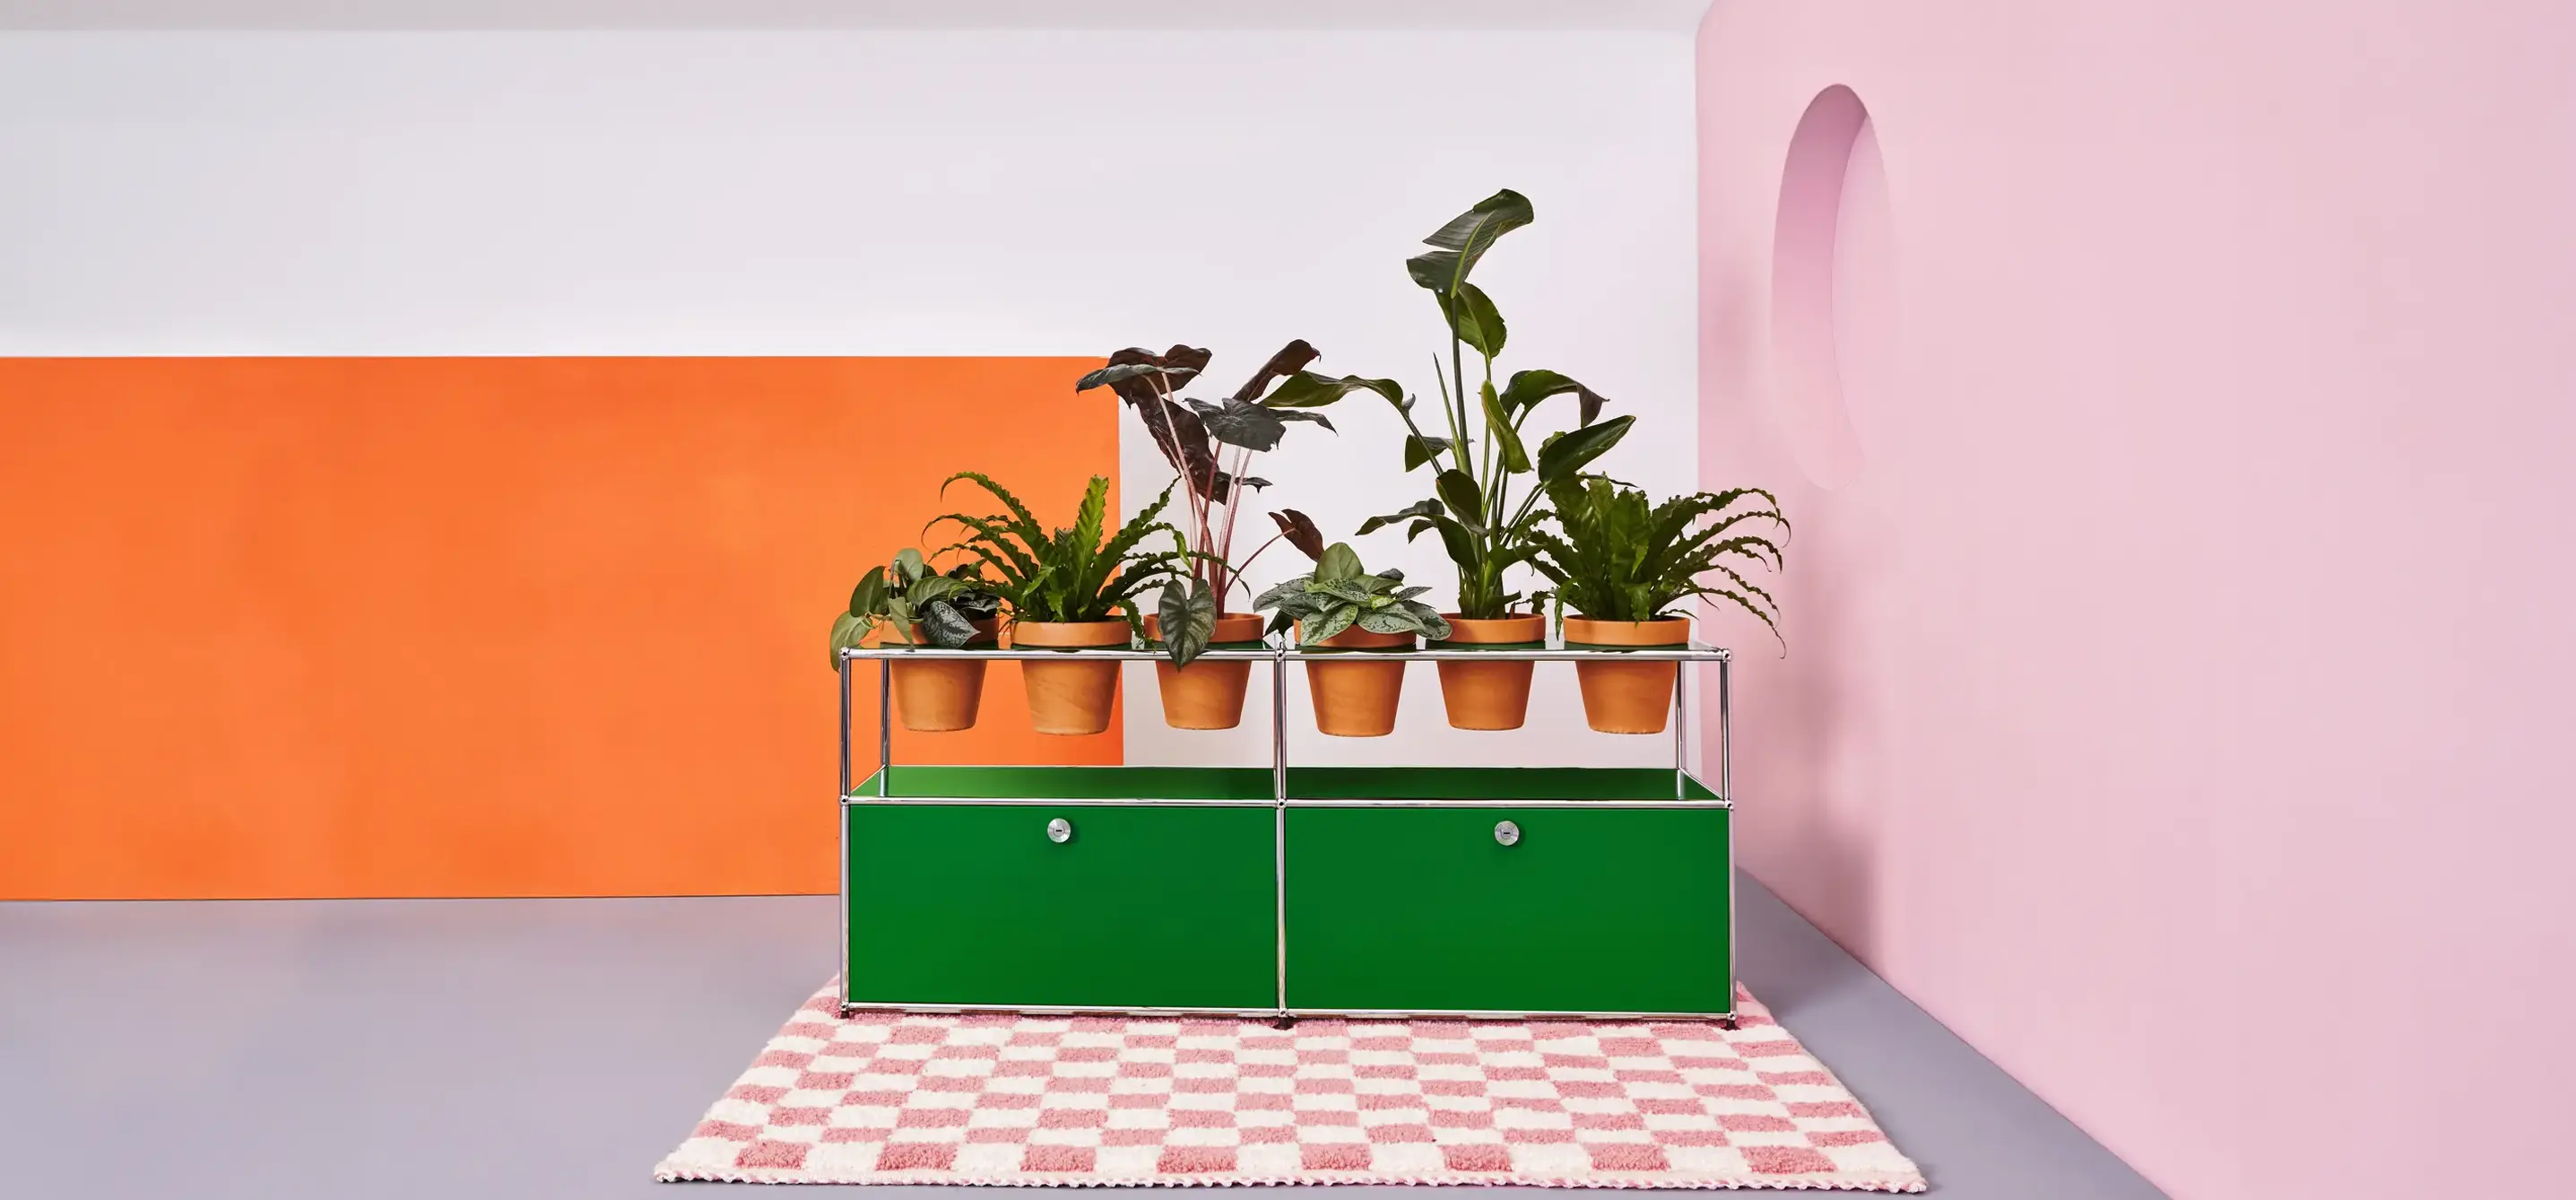 Grünes USM-Haller Sideboard mit Pflanzeneinlagen auf kariertem Teppich